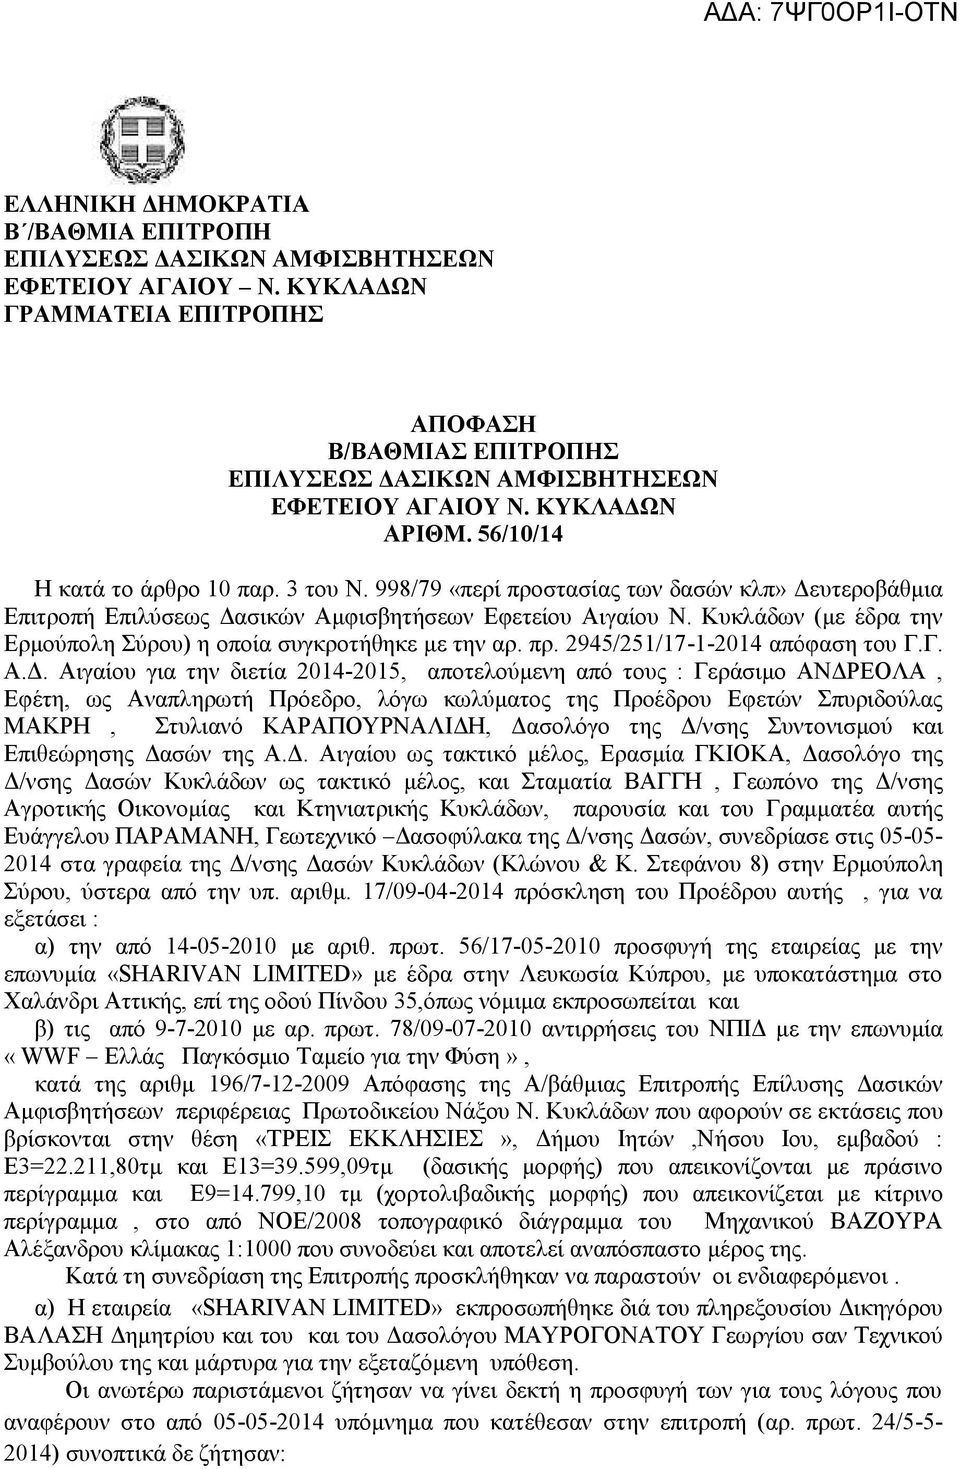 Κυκλάδων (με έδρα την Ερμούπολη Σύρου) η οποία συγκροτήθηκε με την αρ. πρ. 2945/251/17-1-2014 απόφαση του Γ.Γ. Α.Δ.